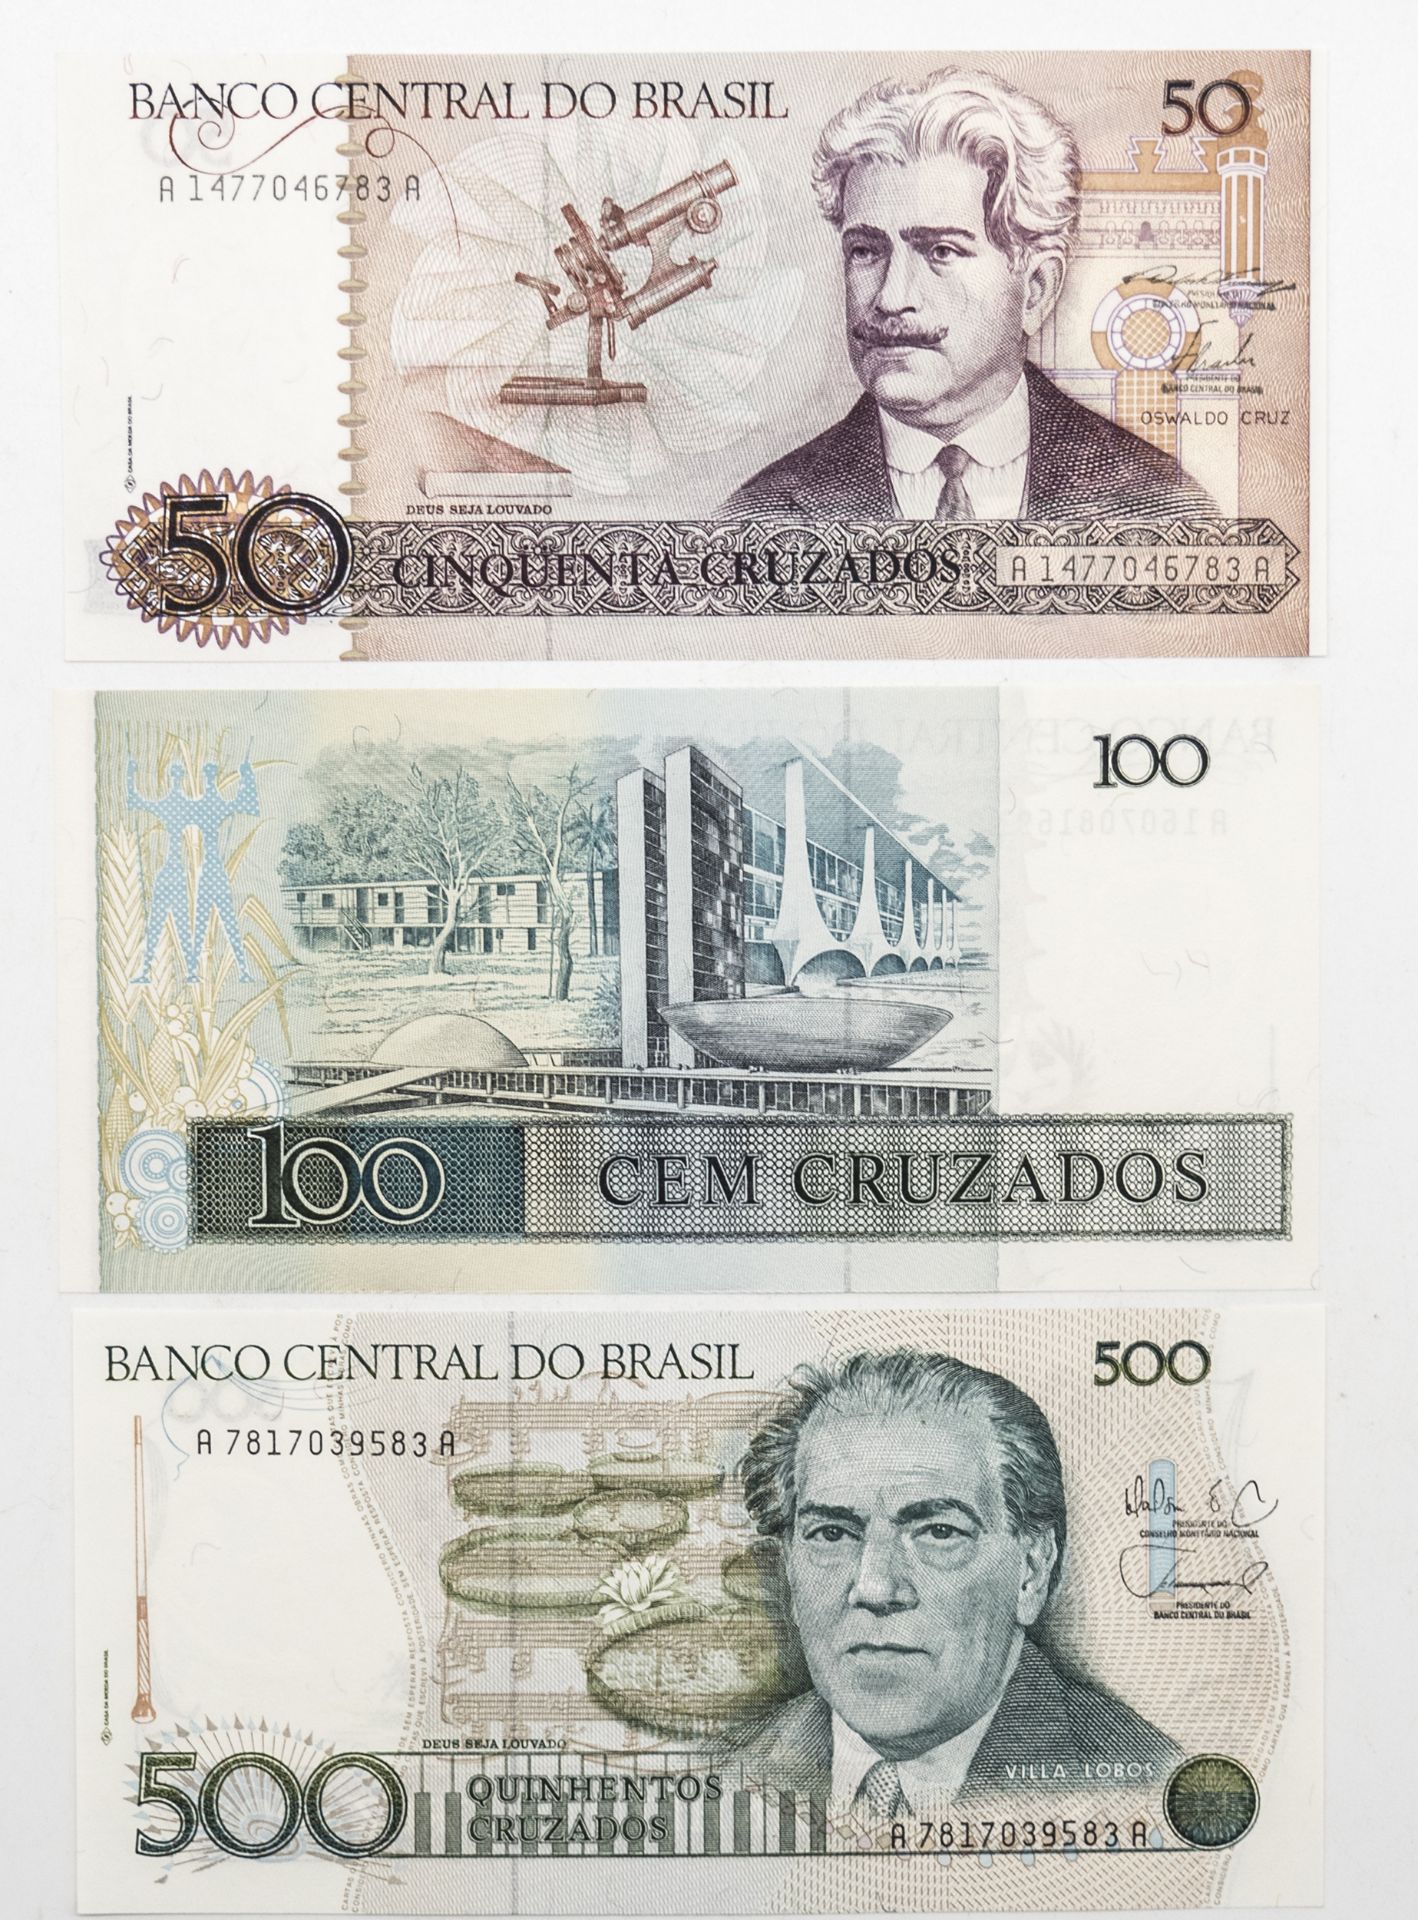 Brasilien, Lot Banknoten, bestehend aus 50.-, 100.- und 500 Cruzados. Erhaltung: vz. - Image 2 of 2